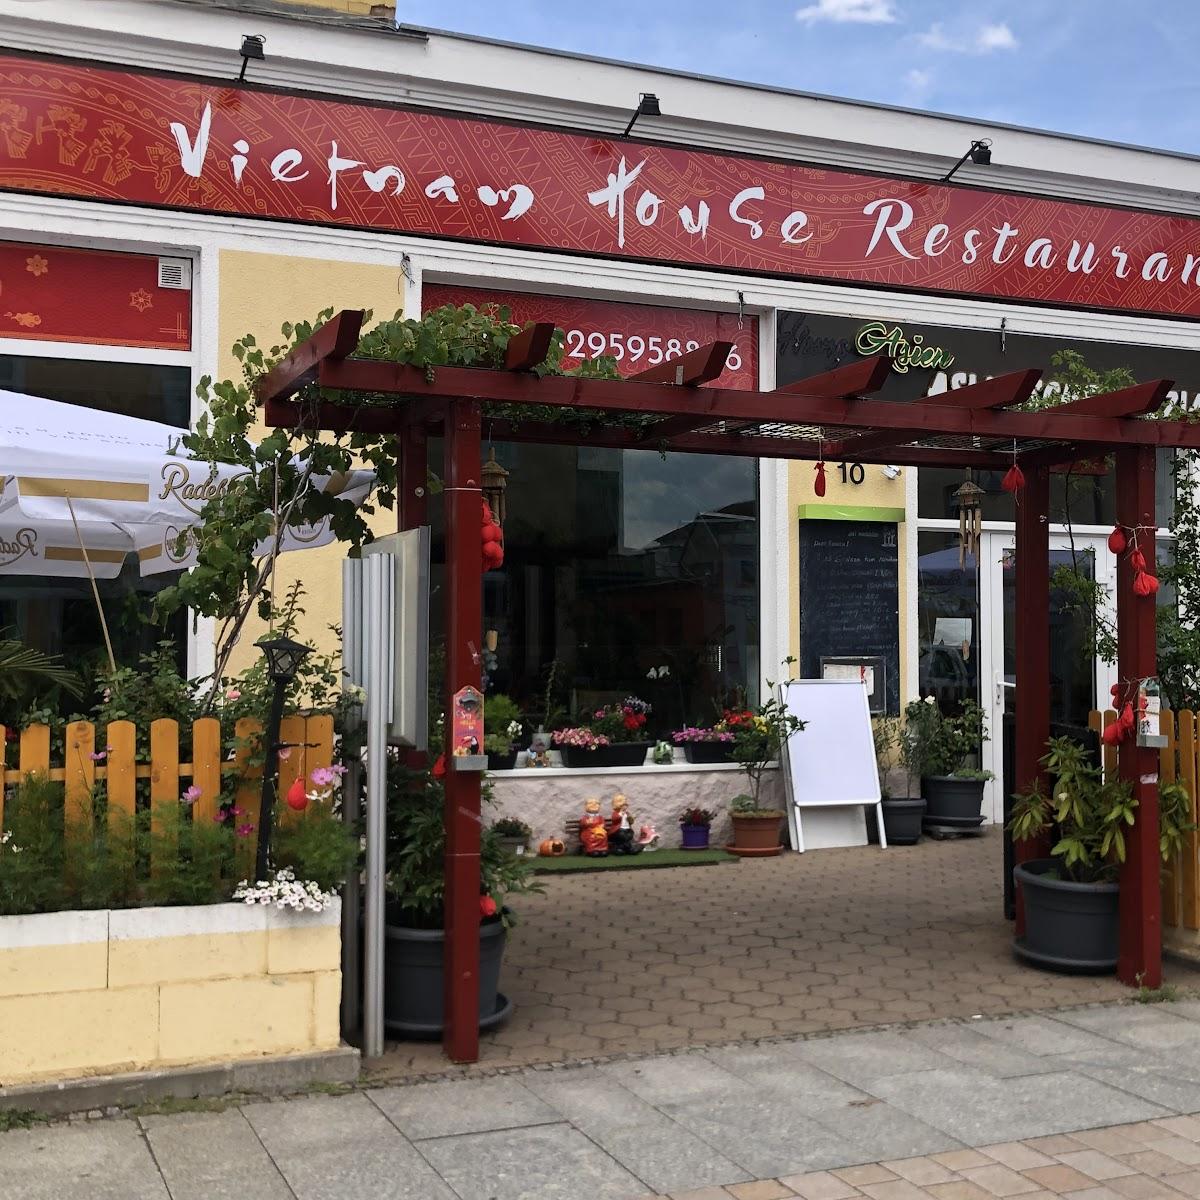 Restaurant "Vietnam House" in Heidenau